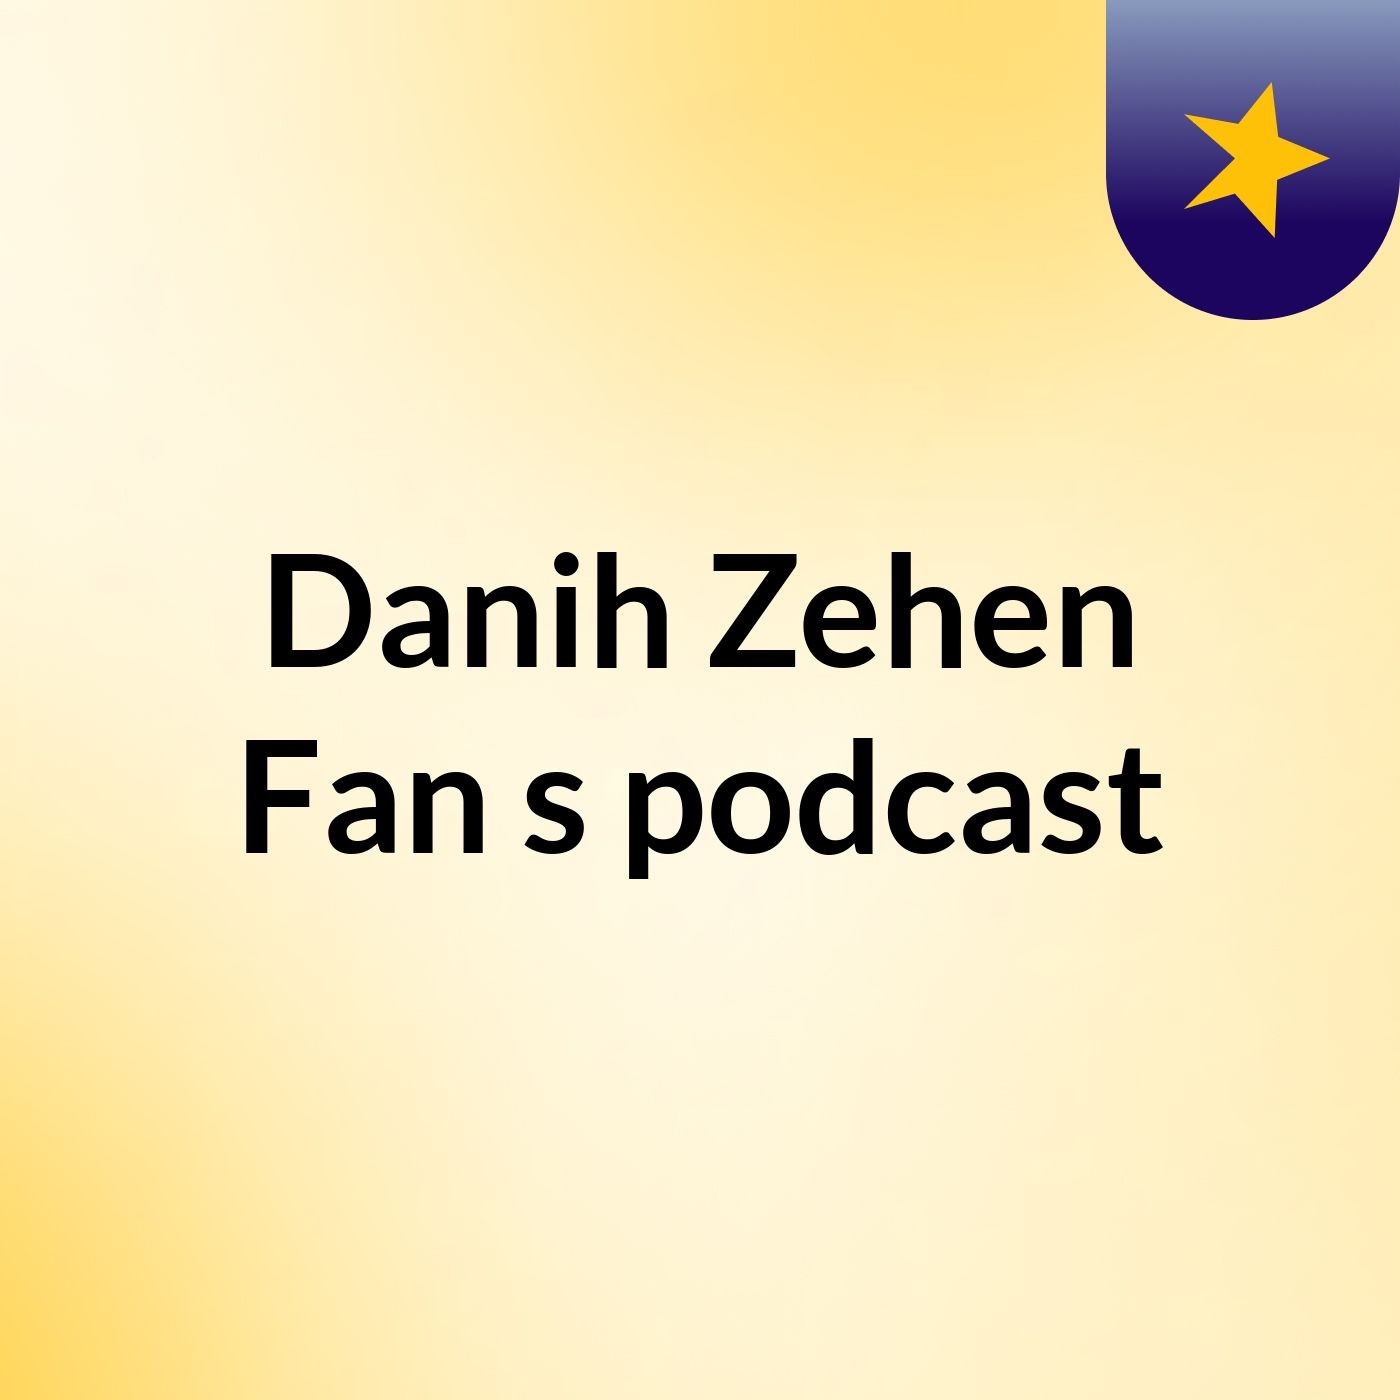 Episode 7 - Danih Zehen Fan's podcast